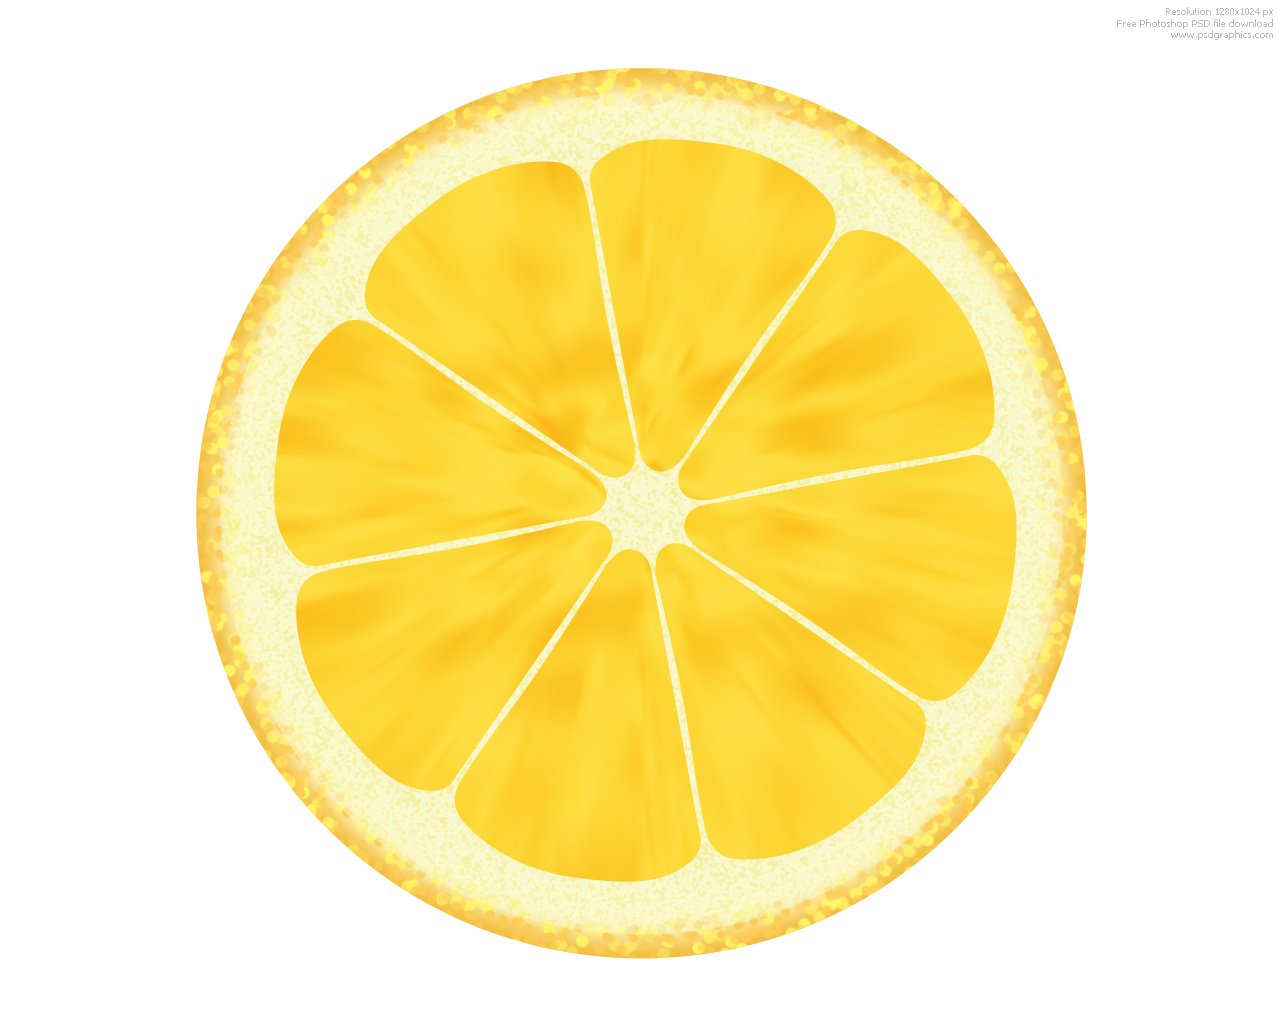 lemon-slice-background.jpg